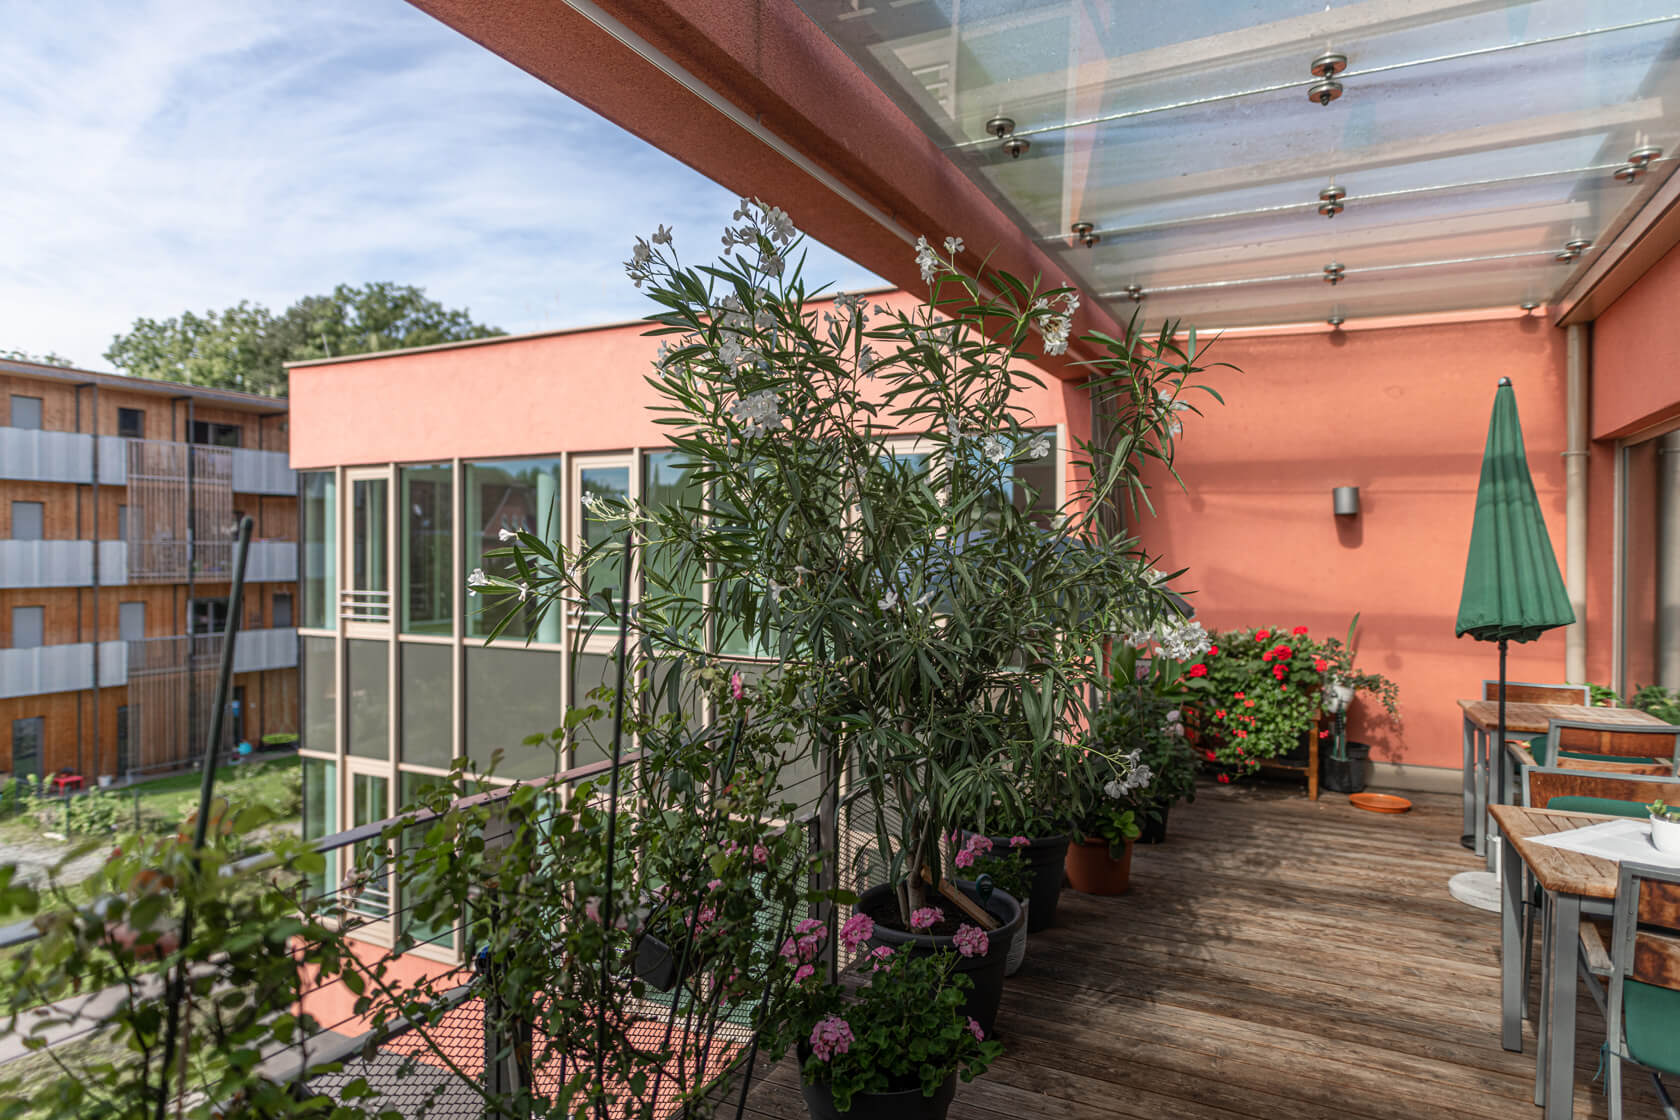 Balkon im Pflegewohnheim Aigner Rollett am Rosenhain mit vielen Pflanzen und Blumen, einem grünen Sonnenschirm und Sitzgelegenheiten